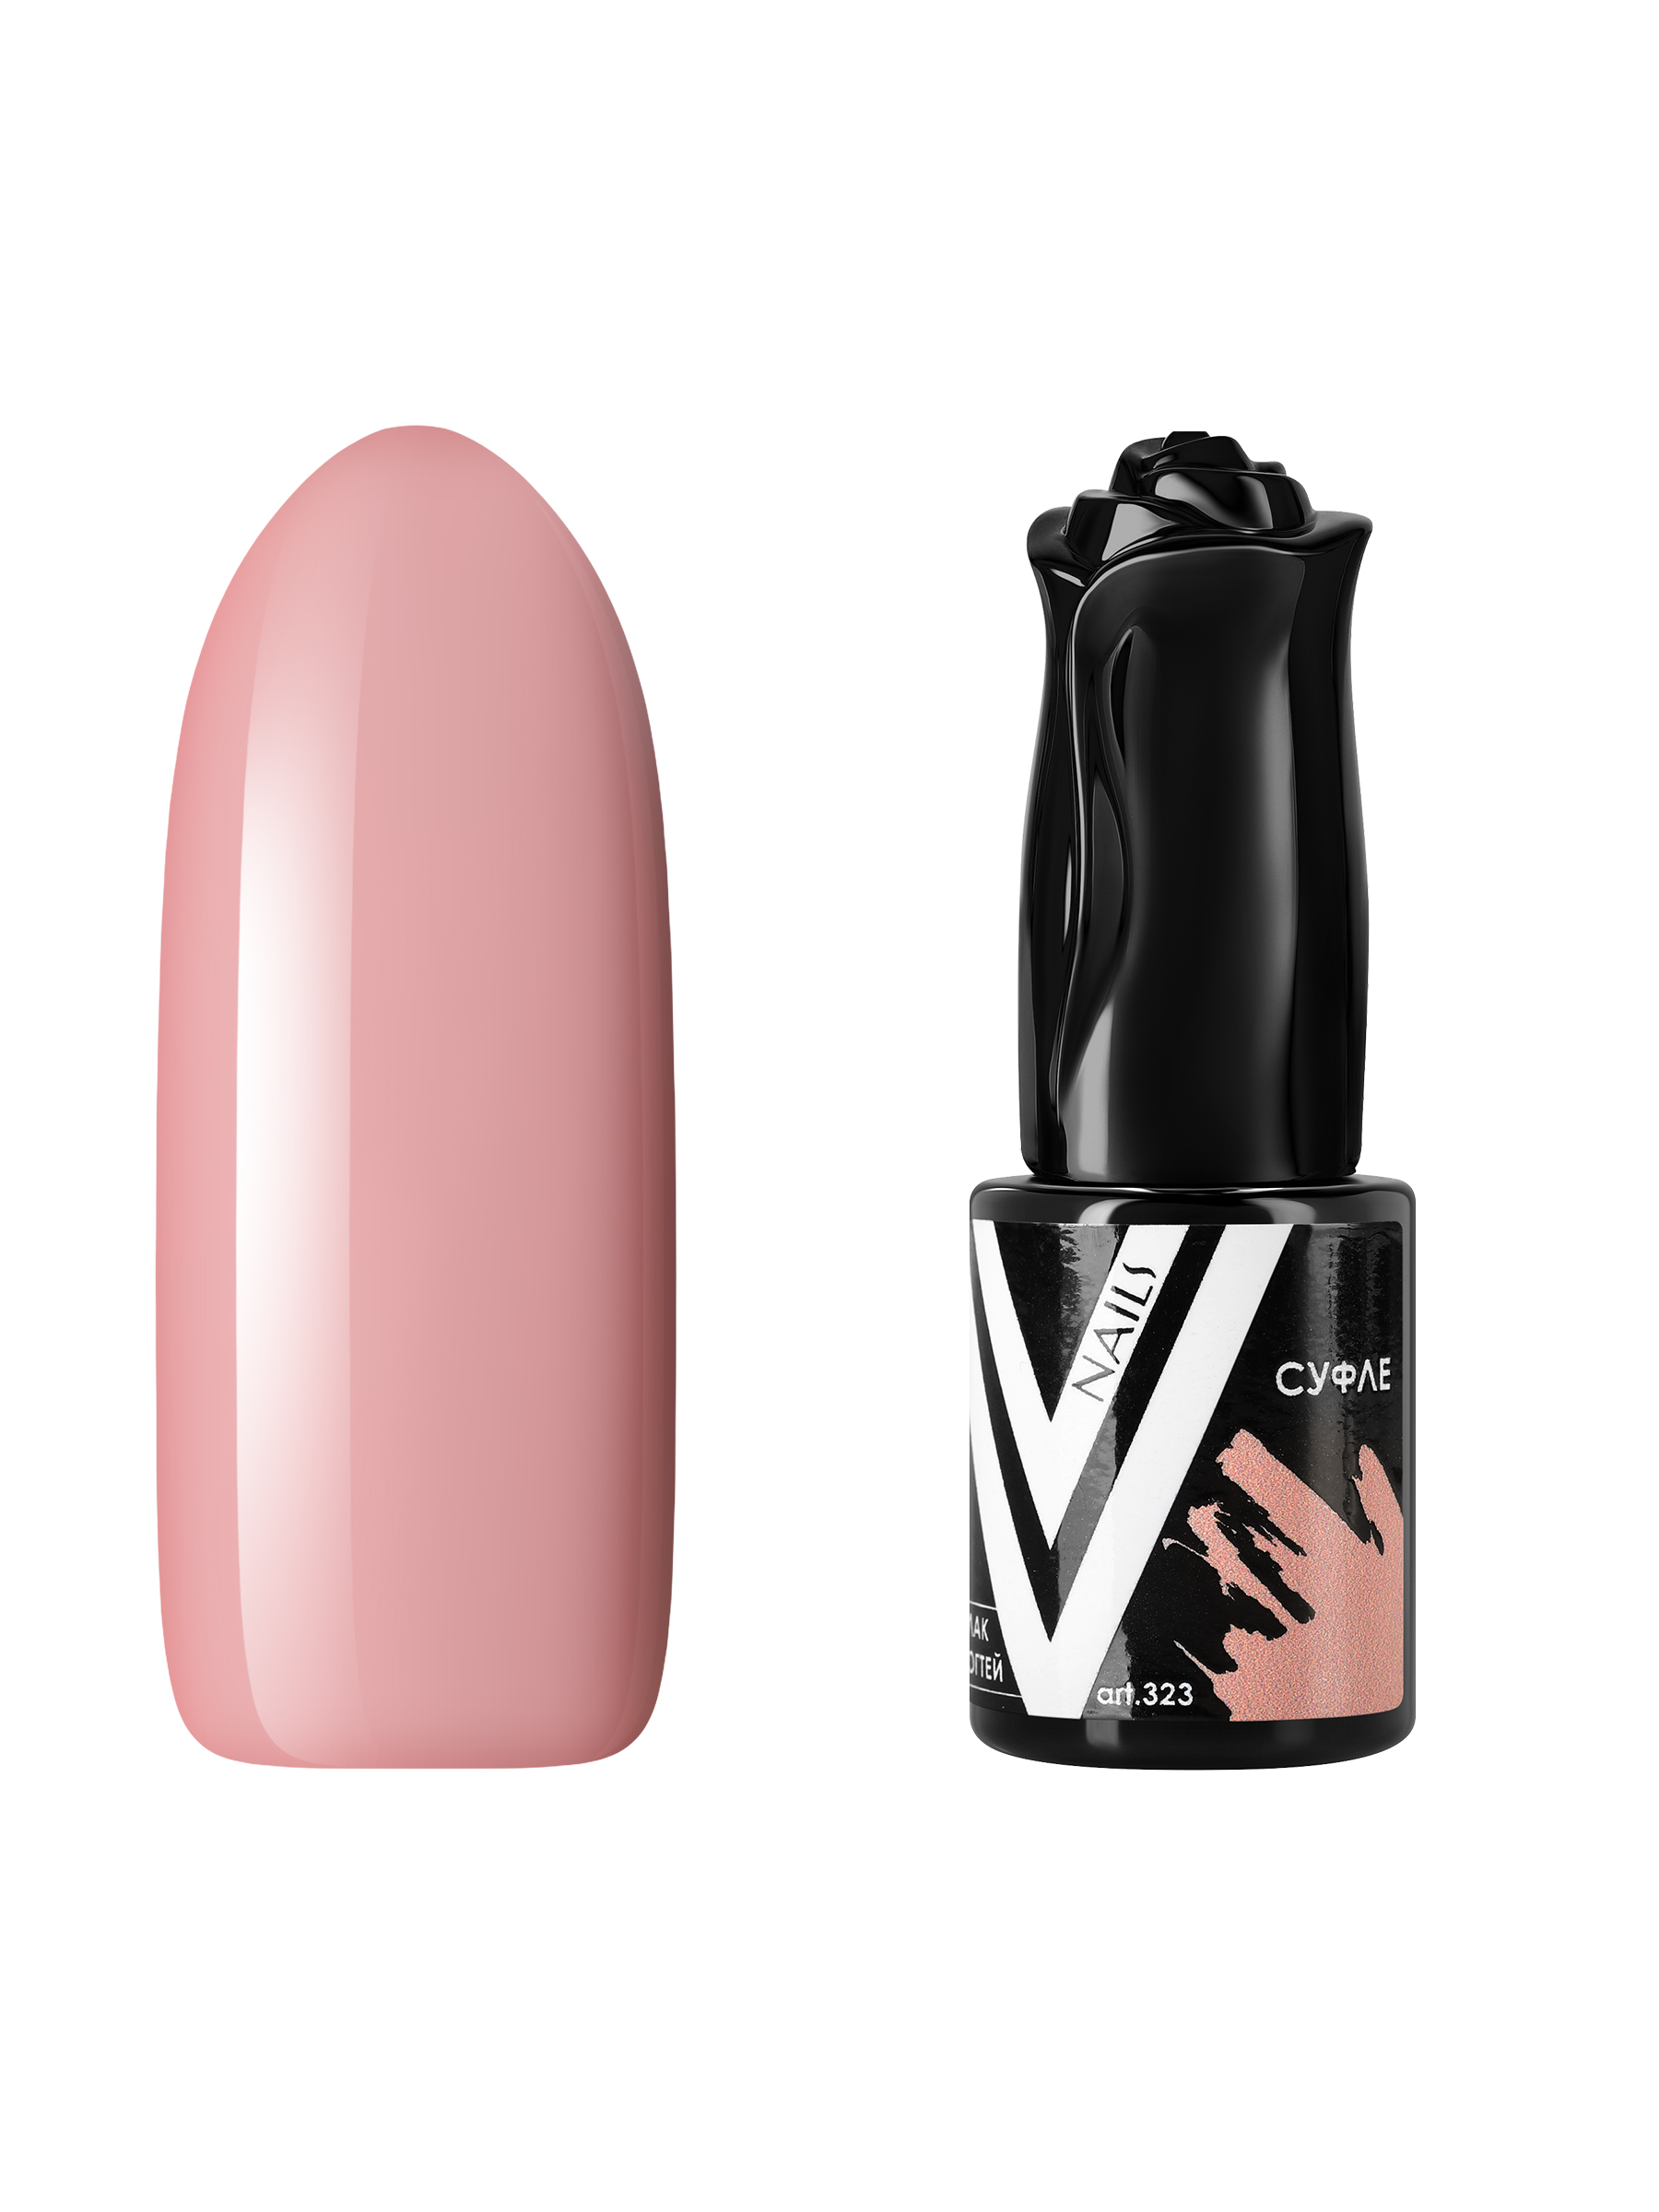 Гель-лак для ногтей Vogue Nails плотный, самовыравнивающийся, светлый, бежевый, 10 мл pekah вв крем восстанавливающий с муцином черной улитки натуральный бежевый